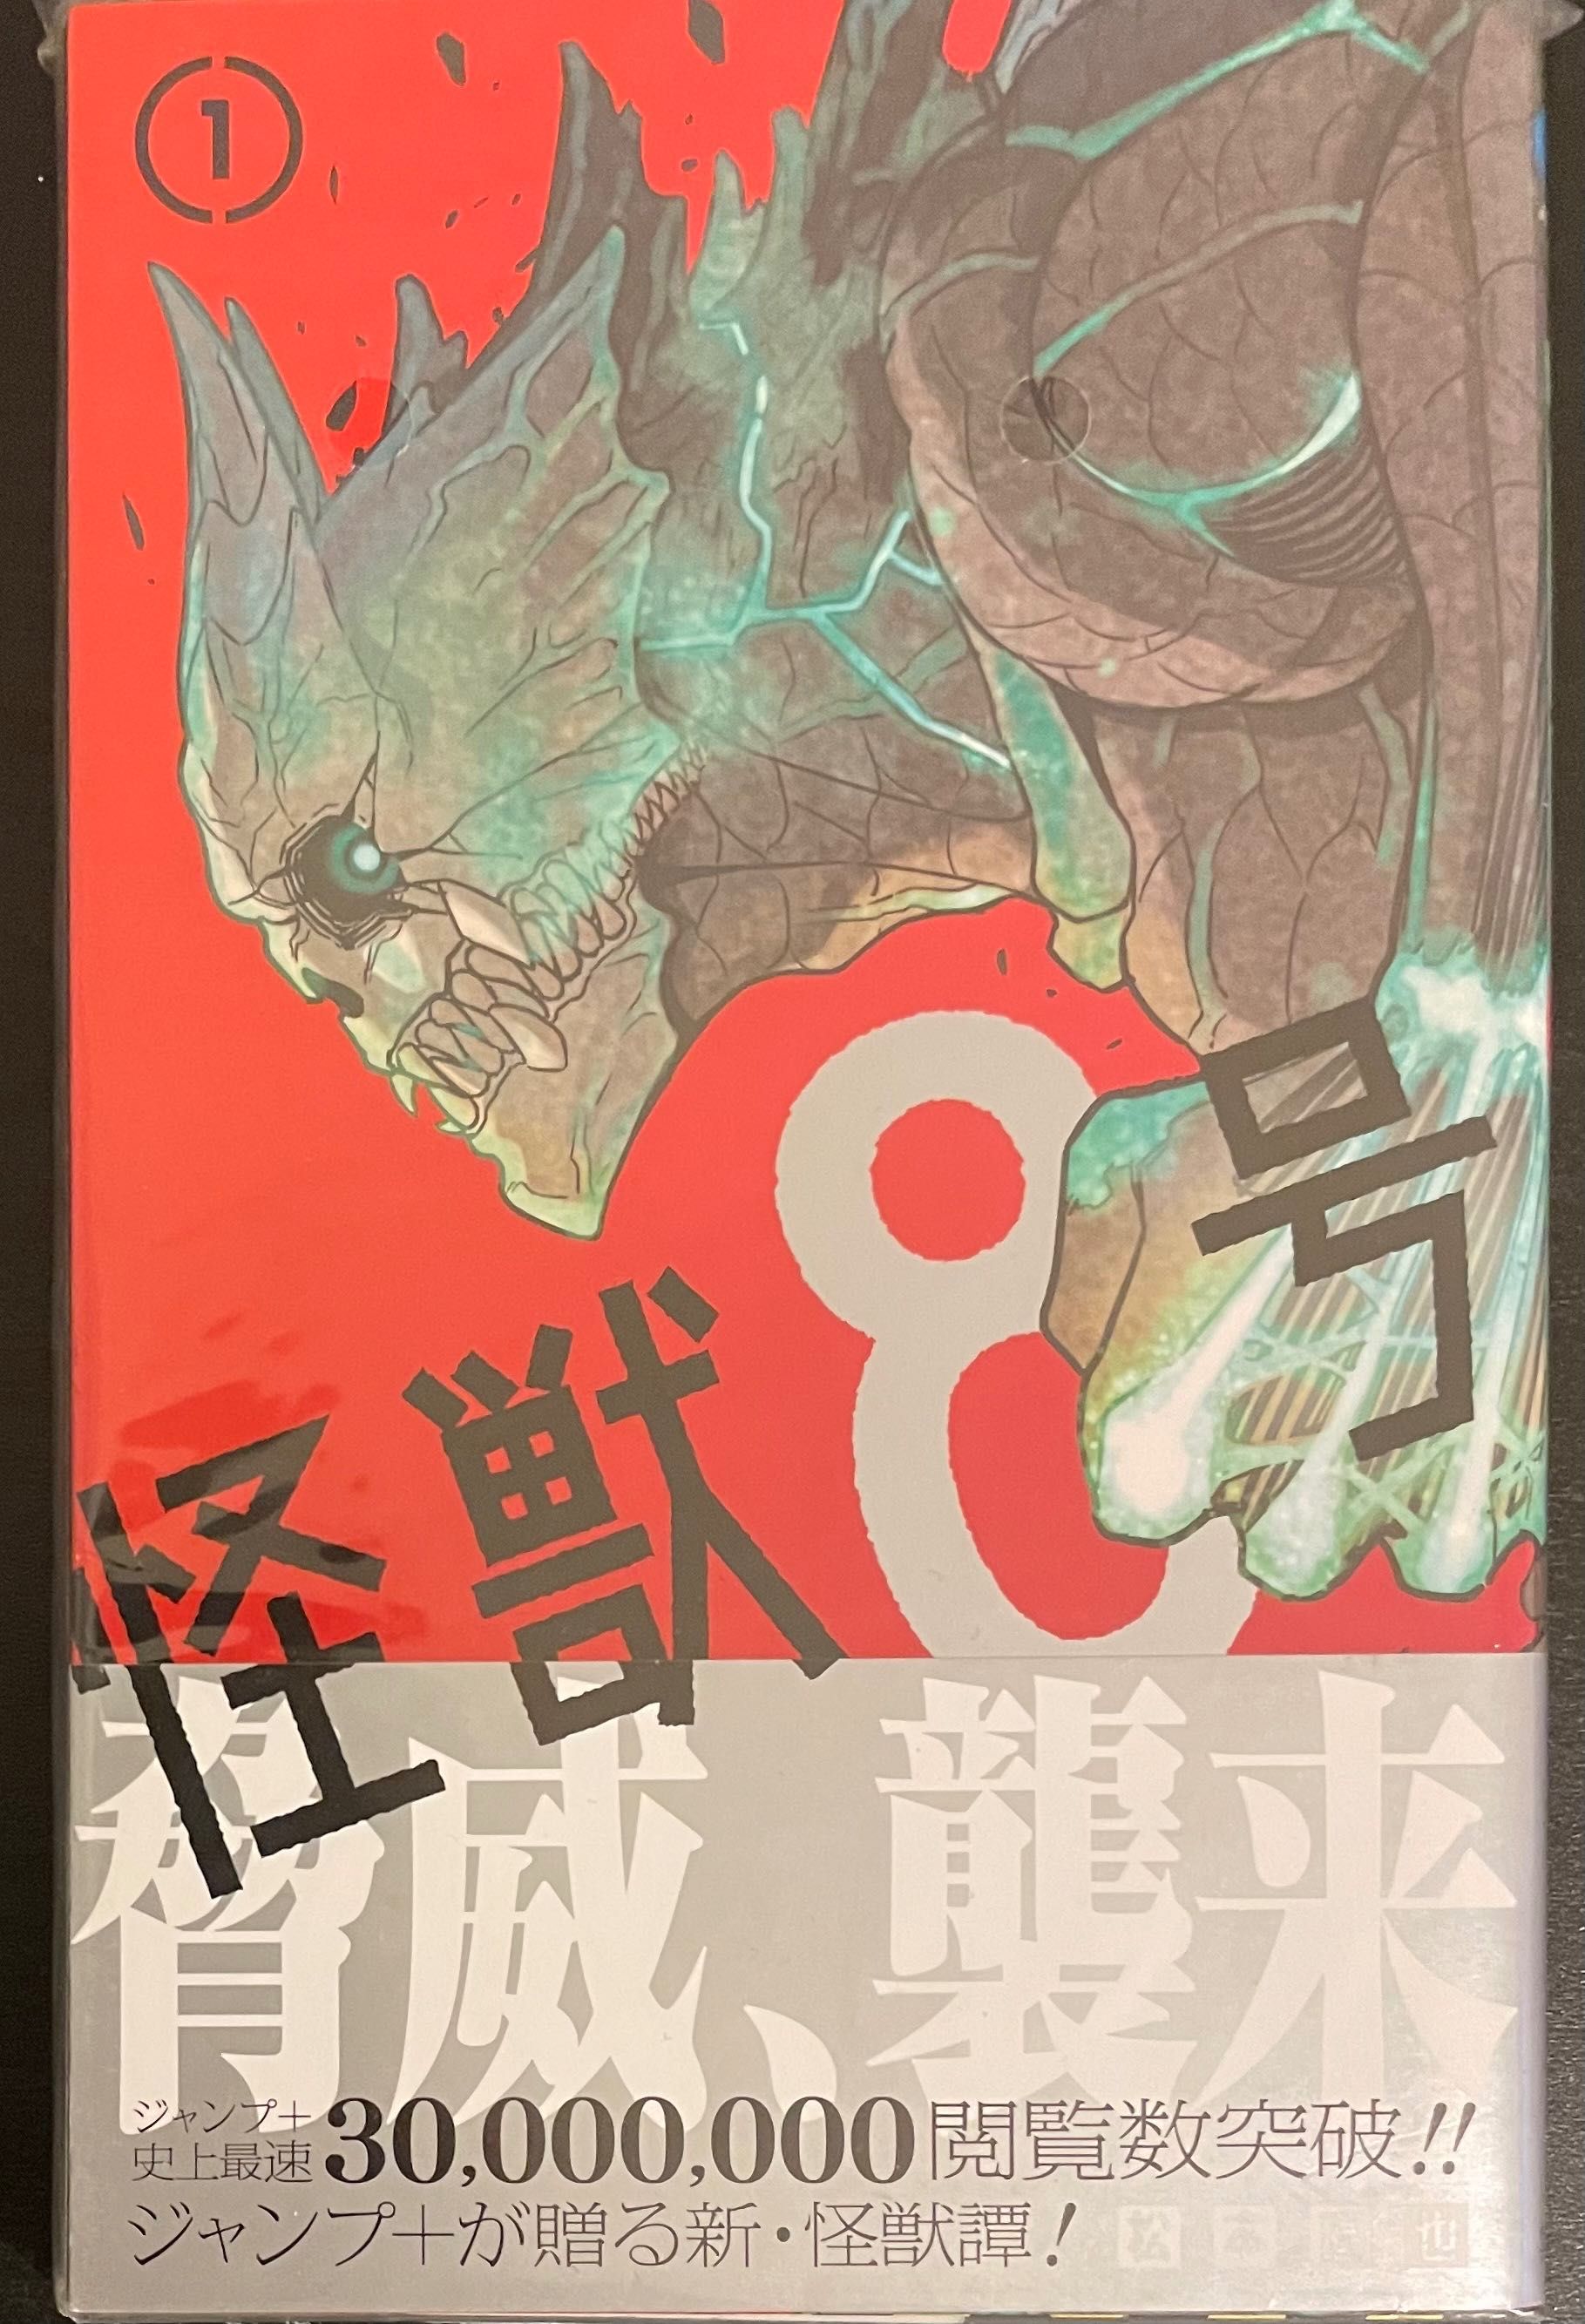 Манґа "Kaiju No.8" 1,2 том японською мовою